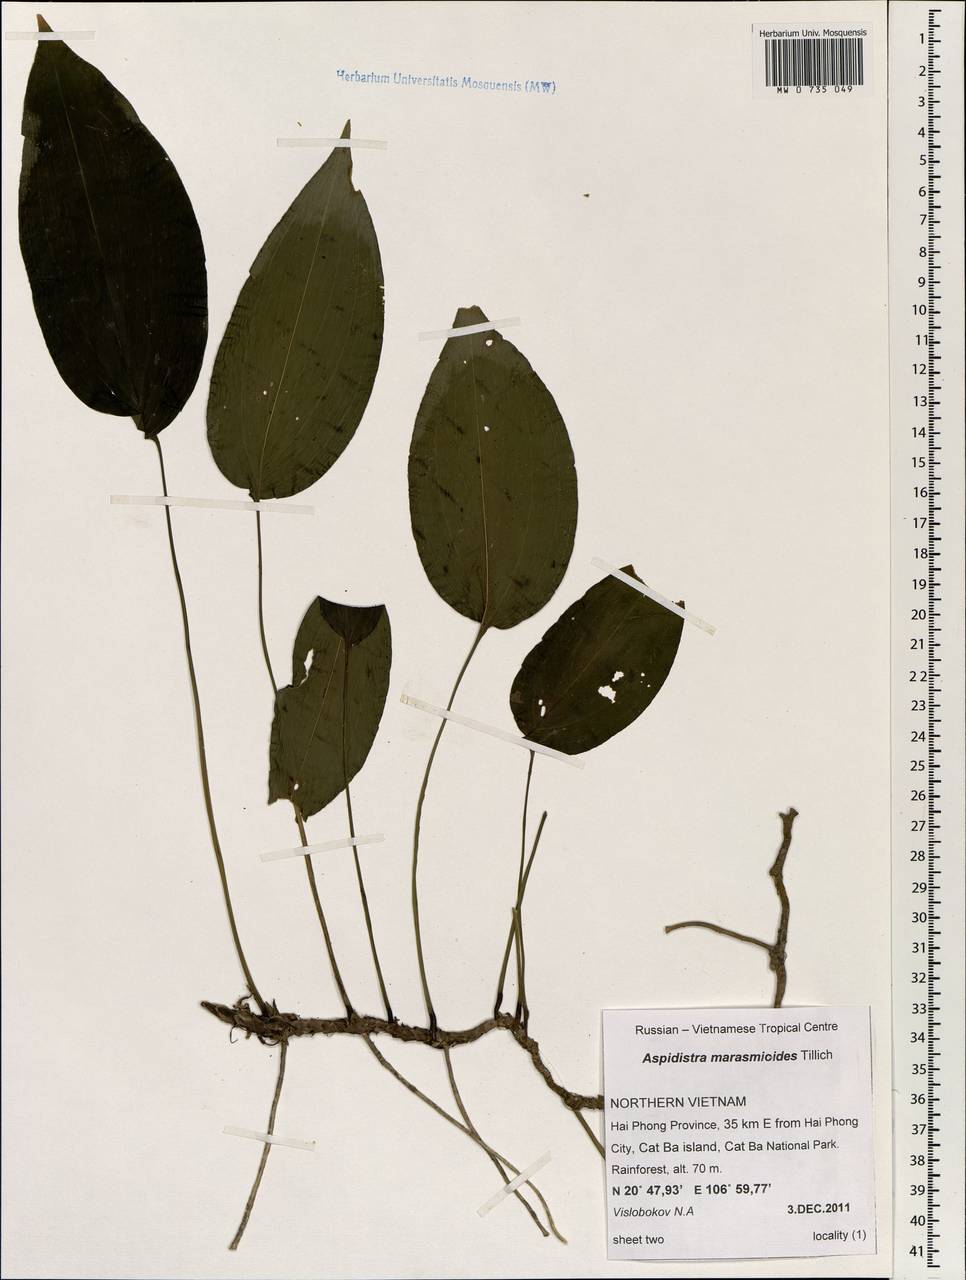 Aspidistra marasmioides Tillich, South Asia, South Asia (Asia outside ex-Soviet states and Mongolia) (ASIA) (Vietnam)